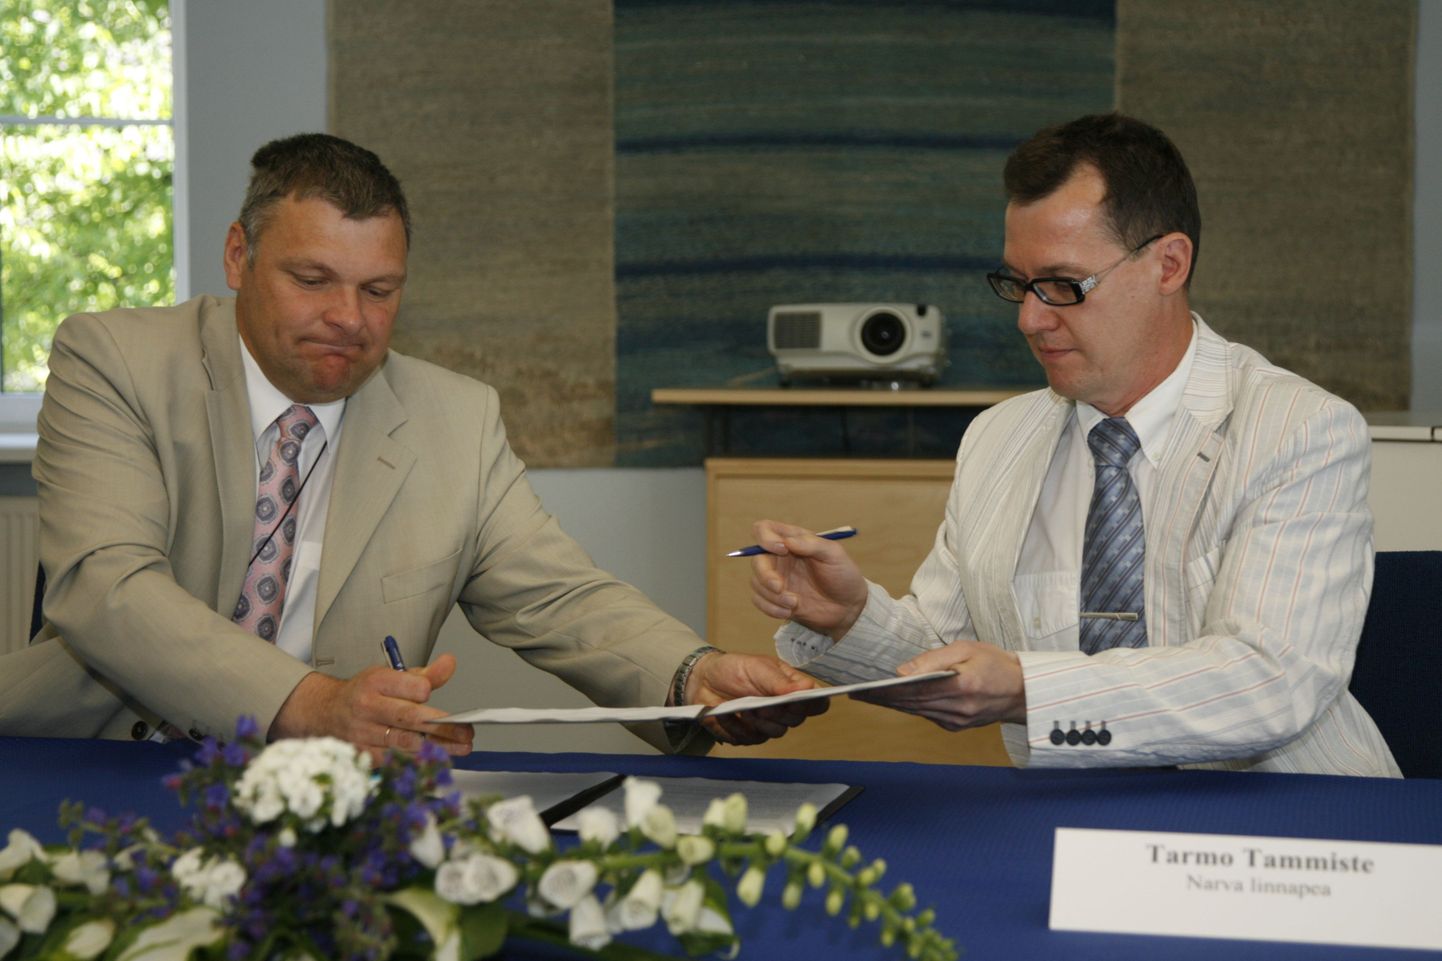 Министр внутренних дел Марко Померантц и мэр Нарвы Тармо Таммисте 30 июня подписали дополнение к административному договору, исходя из которого будут урегулированы вопросы пересечения границы в Нарве.